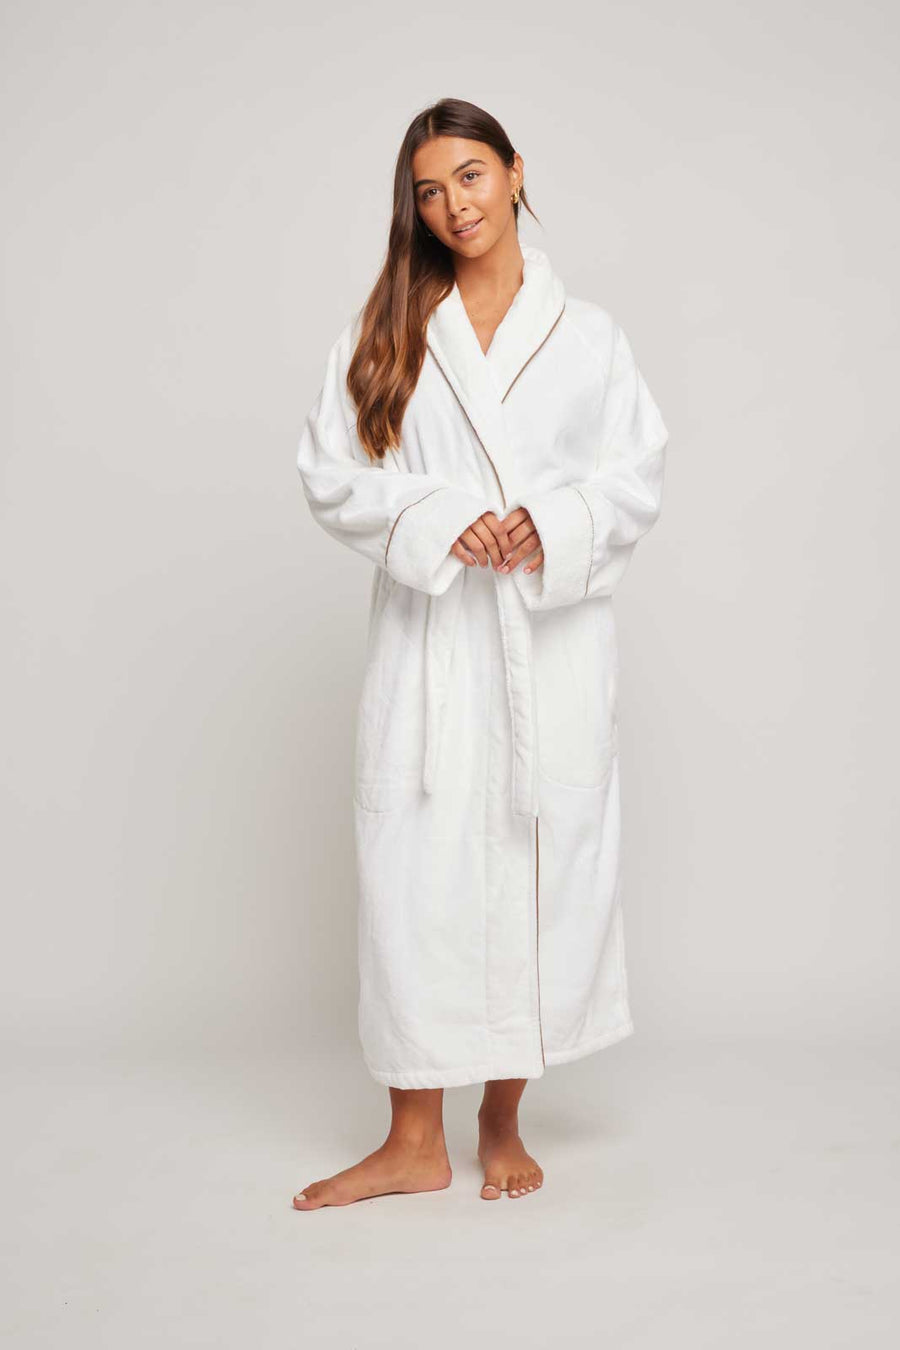 Stylish Wholesale Plush Robe For Sweet Slumber 